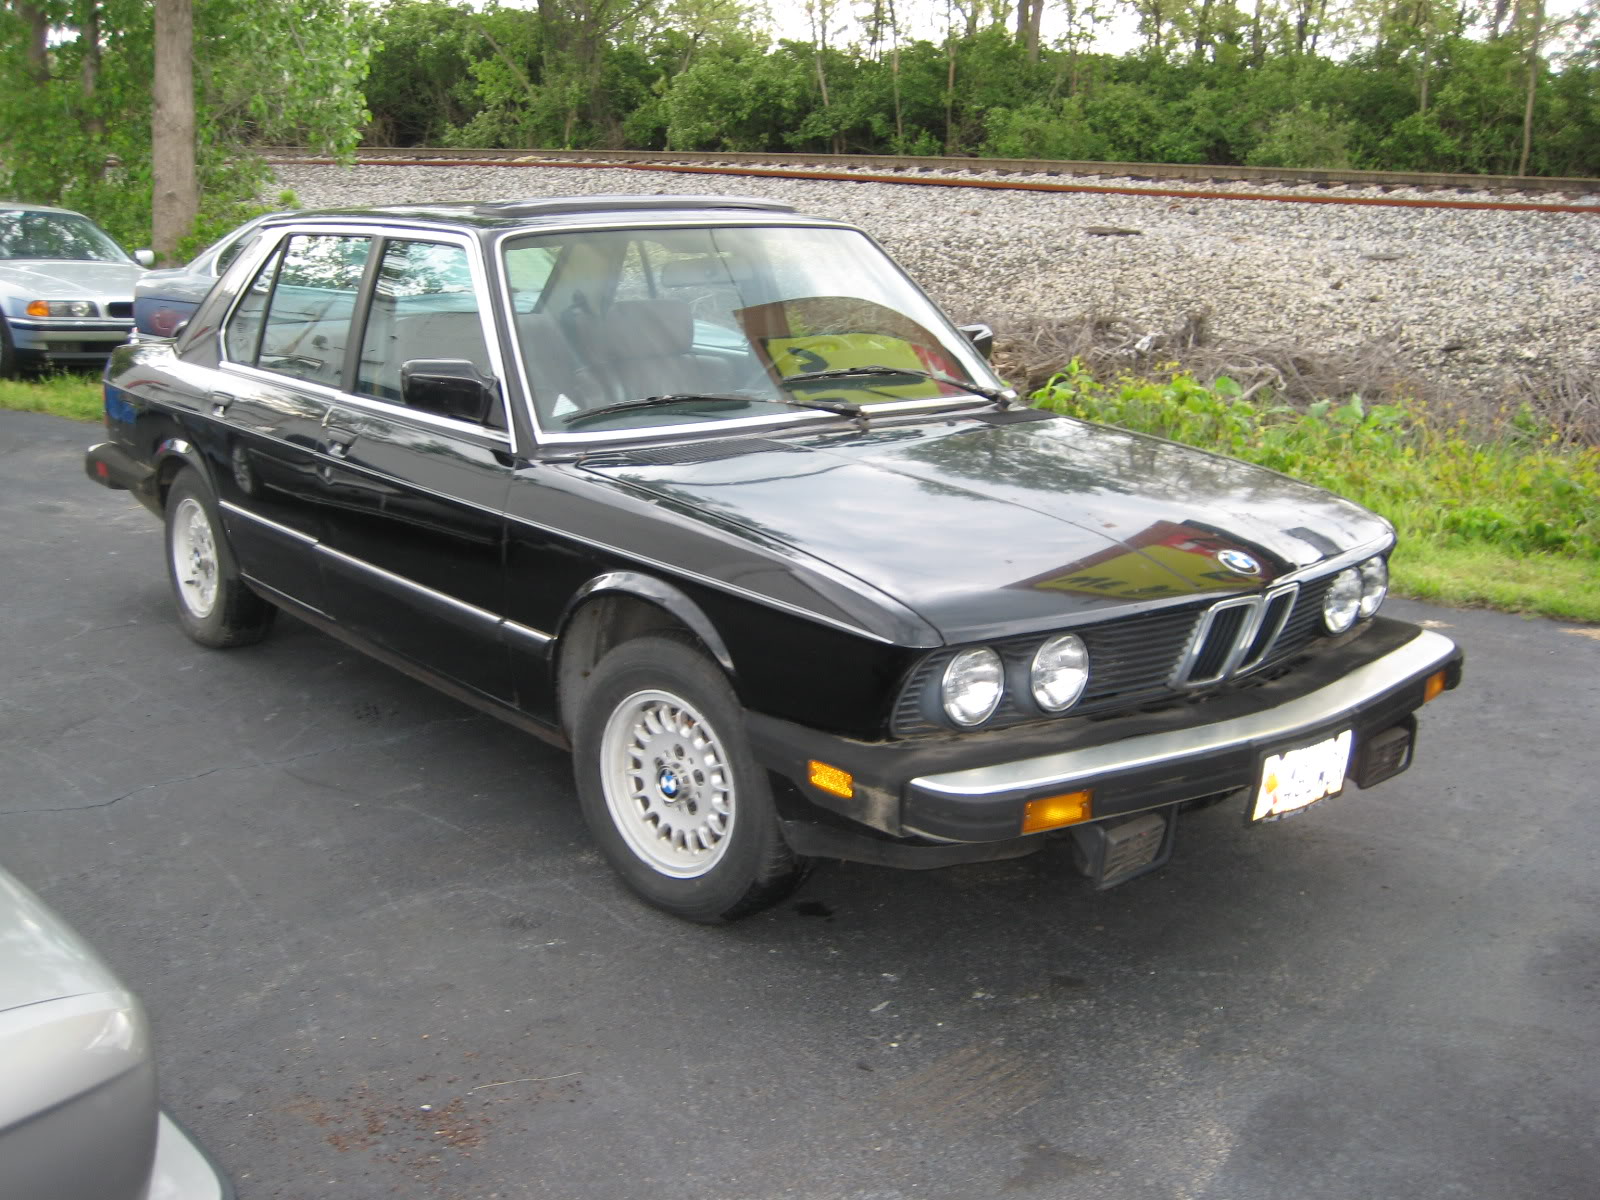 FS: 1985 E28 BMW 528e Complete Car - 5 SPEED - Non-Running - Bimmerforums